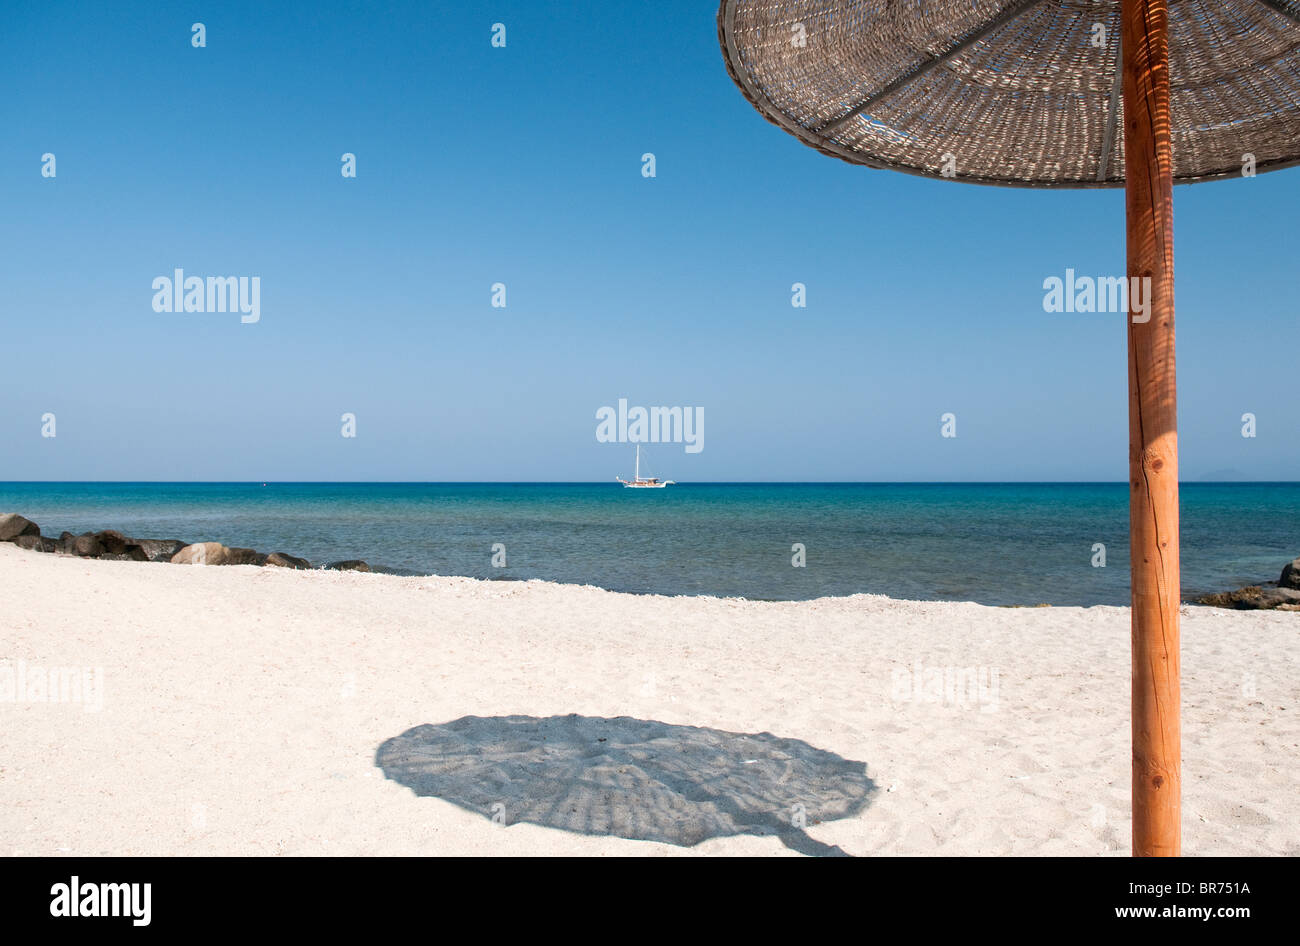 Un parasol jette une ombre sur une plage en Grèce Banque D'Images